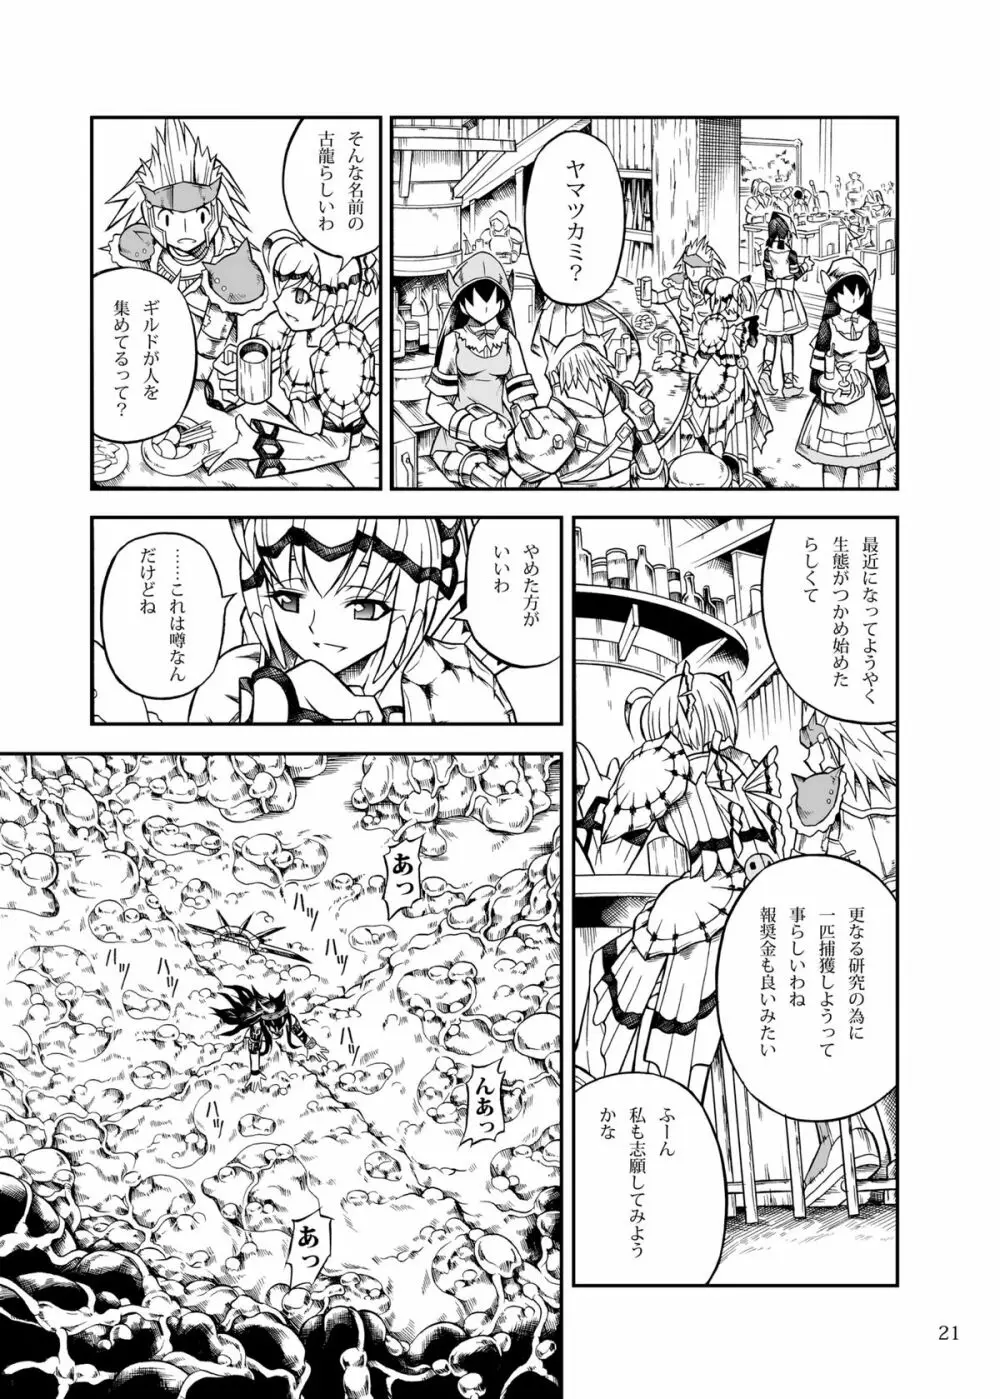 ソロハンターの生態2 the first part - page21